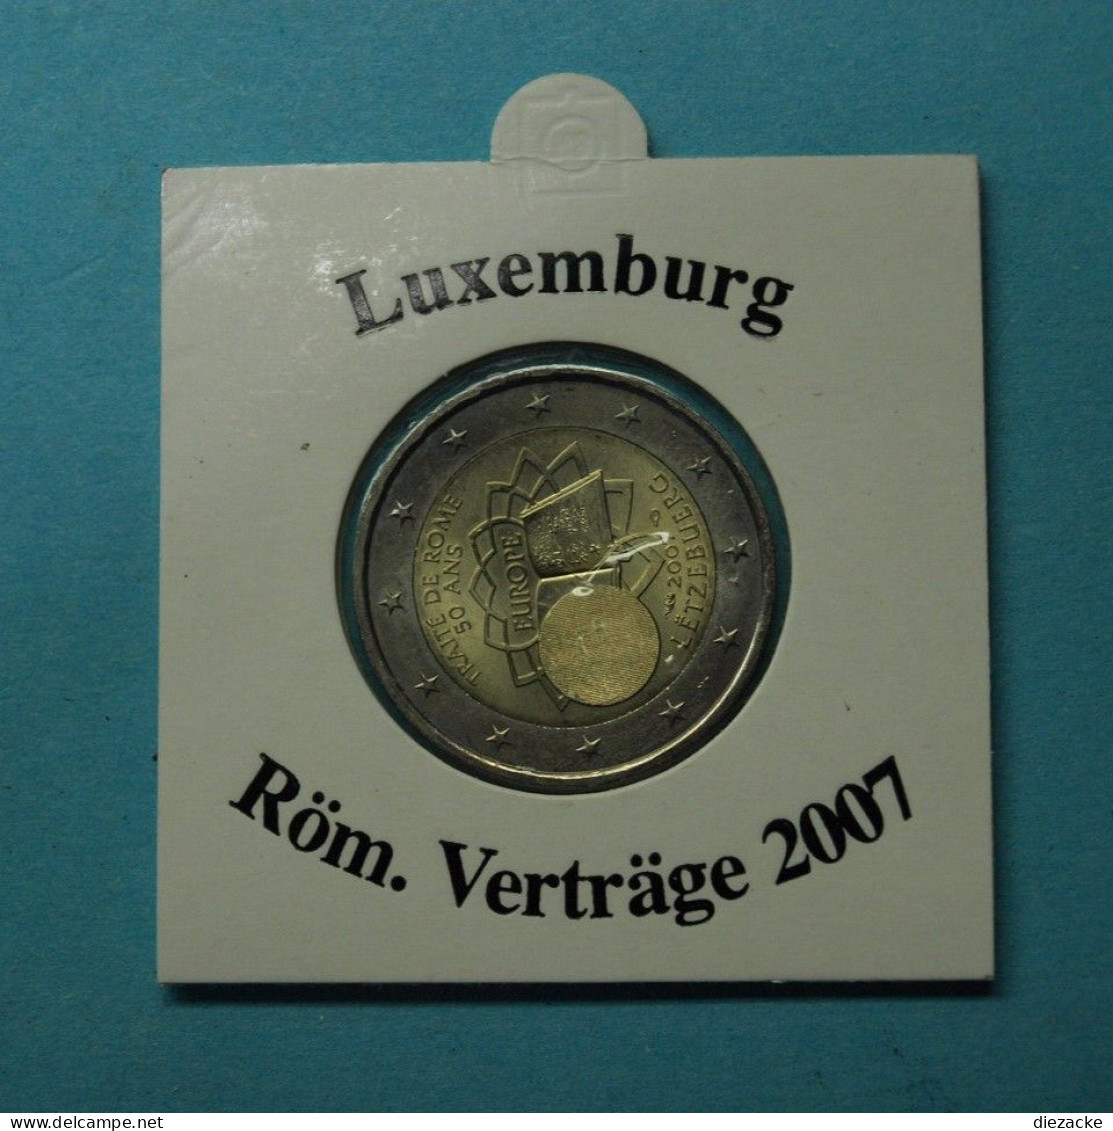 Luxemburg 2007 2 Euro Römische Verträge ST (M5347 - Luxemburgo